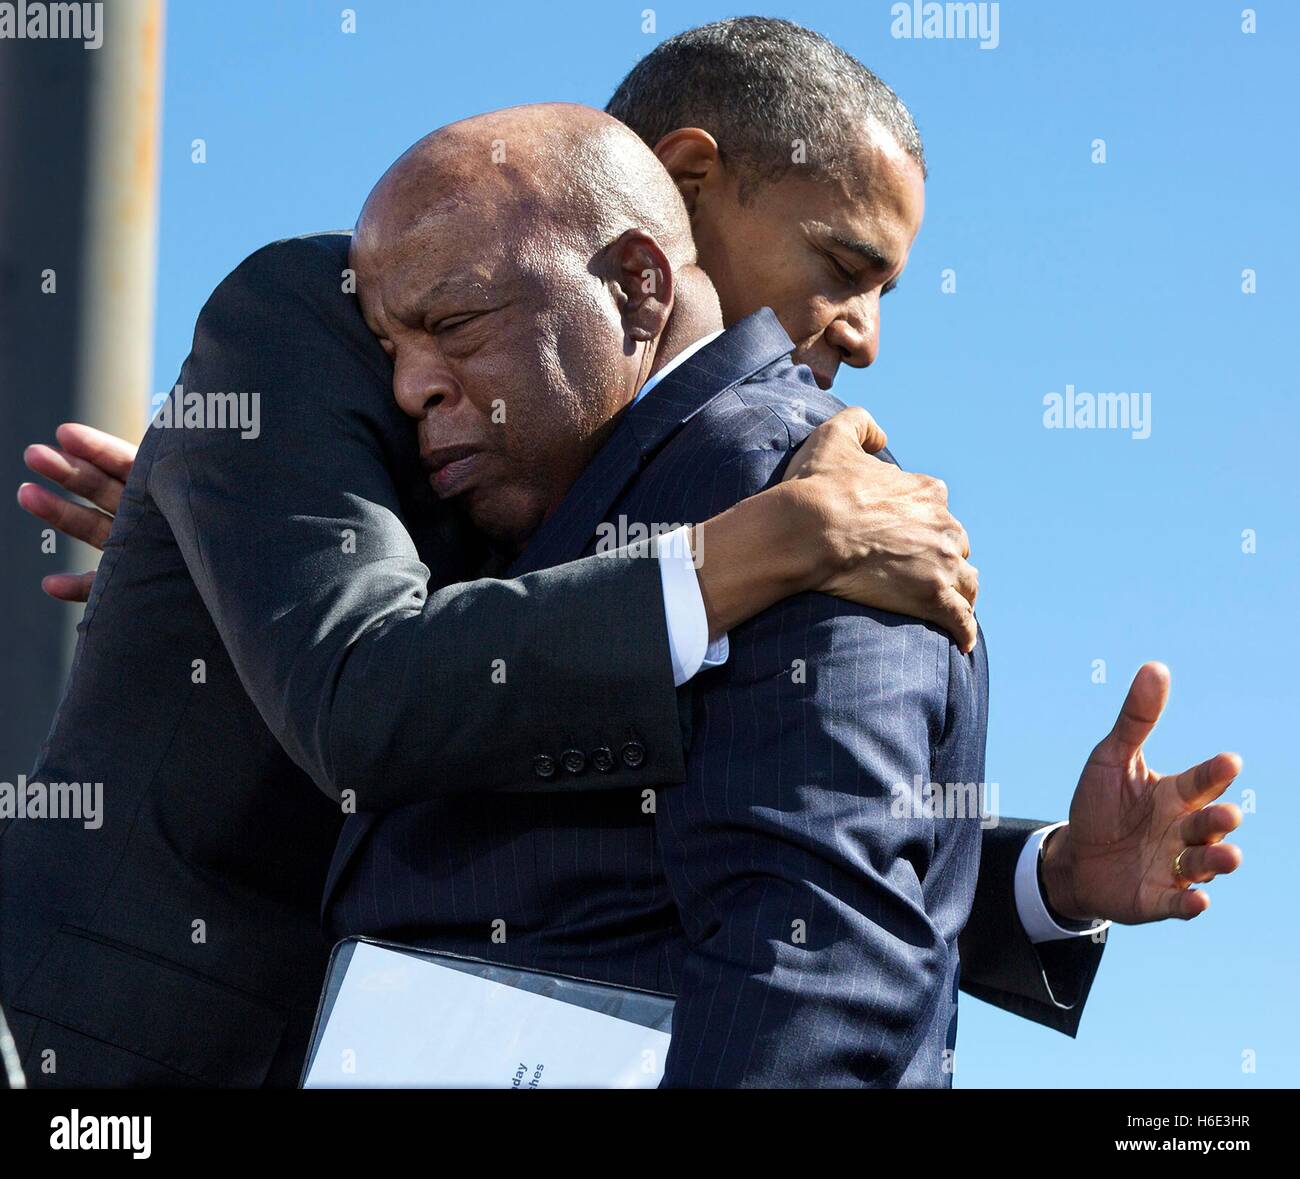 US-Präsident Barack Obama umarmt Georgien Kongressabgeordnete John Lewis während der 50. Jahrestag des Bloody Sunday und die bürgerlichen Rechte marschiert zum Gedenken an der Edmund Pettus Bridge 7. März 2015 in Selma, Alabama. Stockfoto